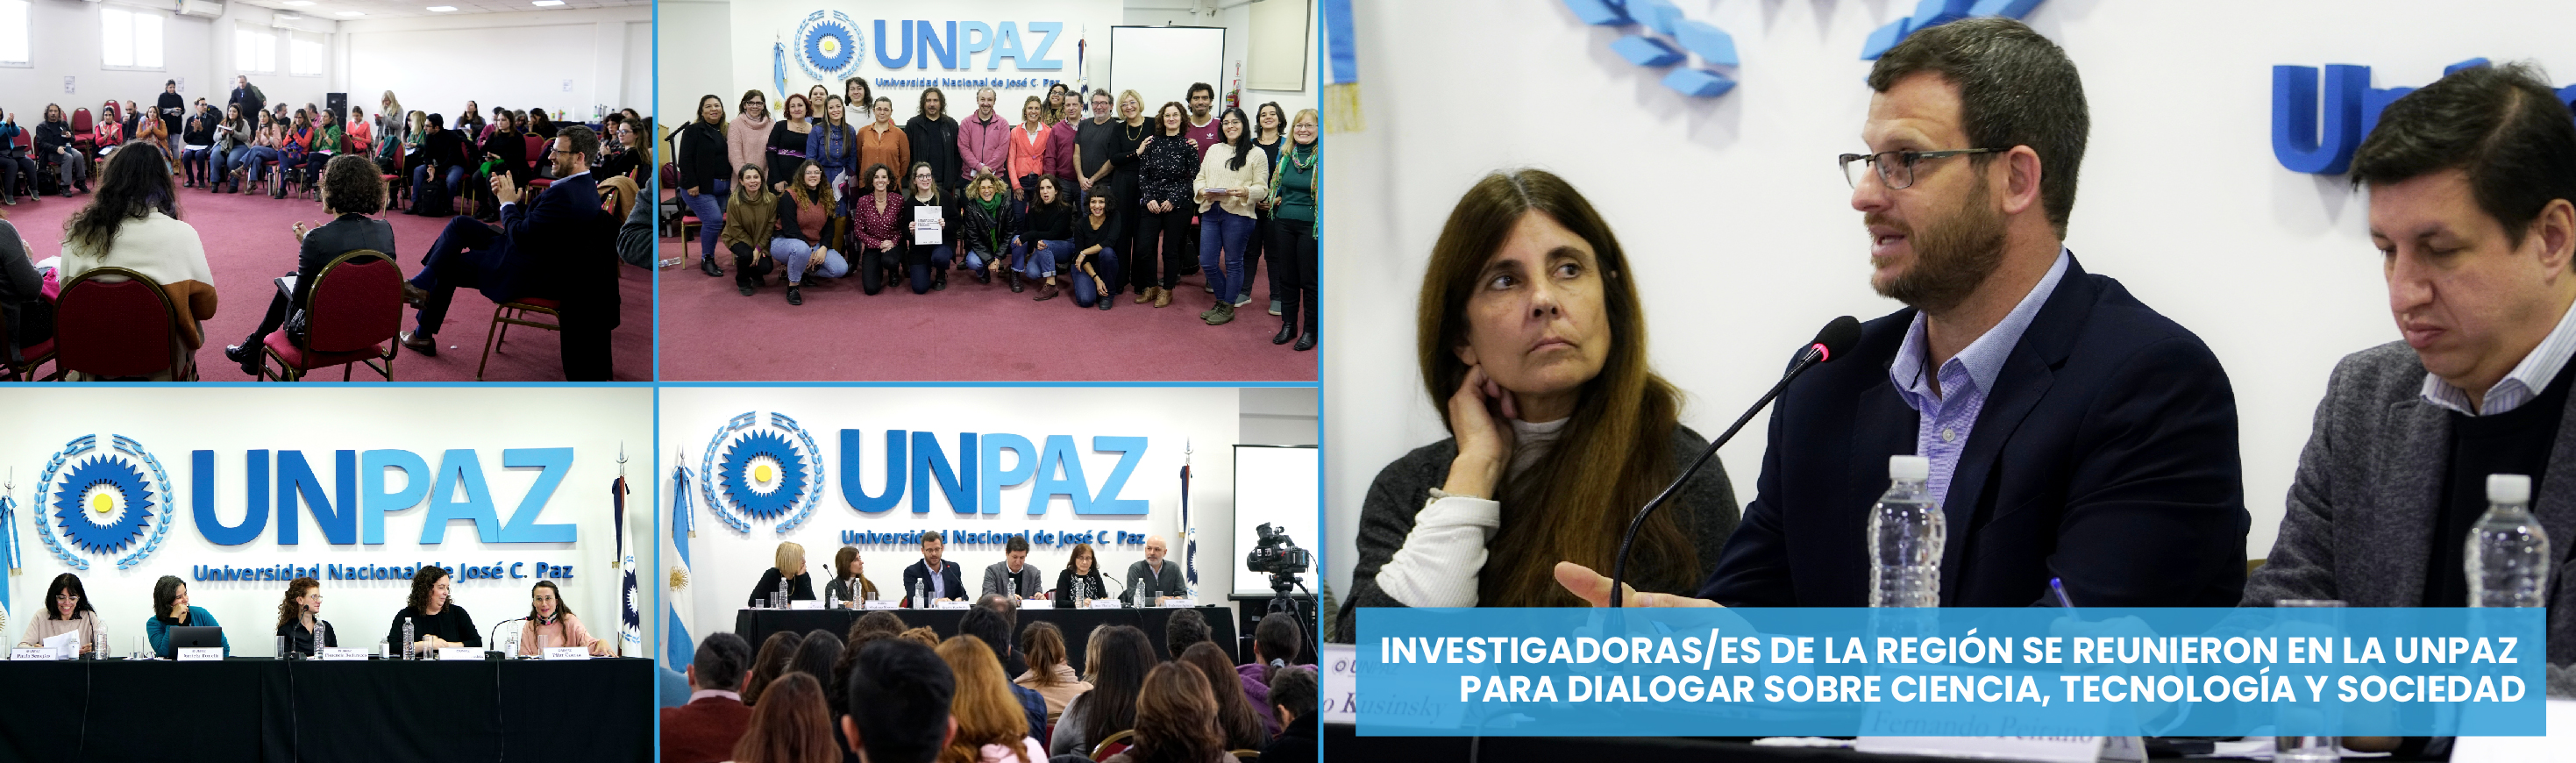 Investigadoras/es de la región se reunieron en la UNPAZ para dialogar sobre Ciencia, Tecnología y Sociedad